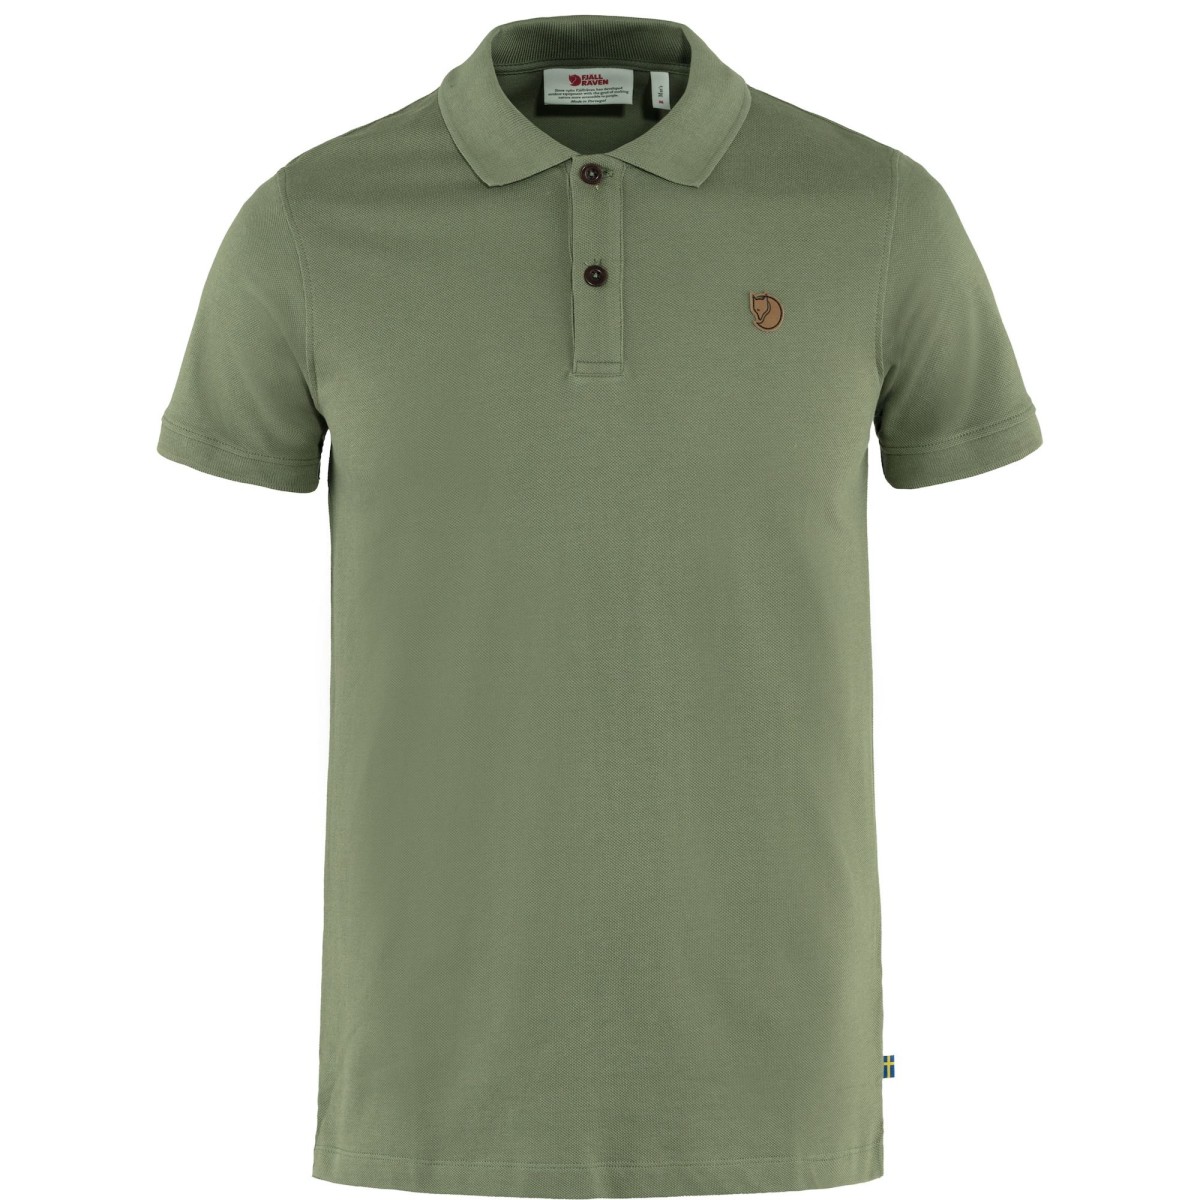 Fj&auml;llr&auml;ven &Ouml;vik Polo Pique Shirt SS 81511 green  Herren Polohemd Kurzarm  Shirt L